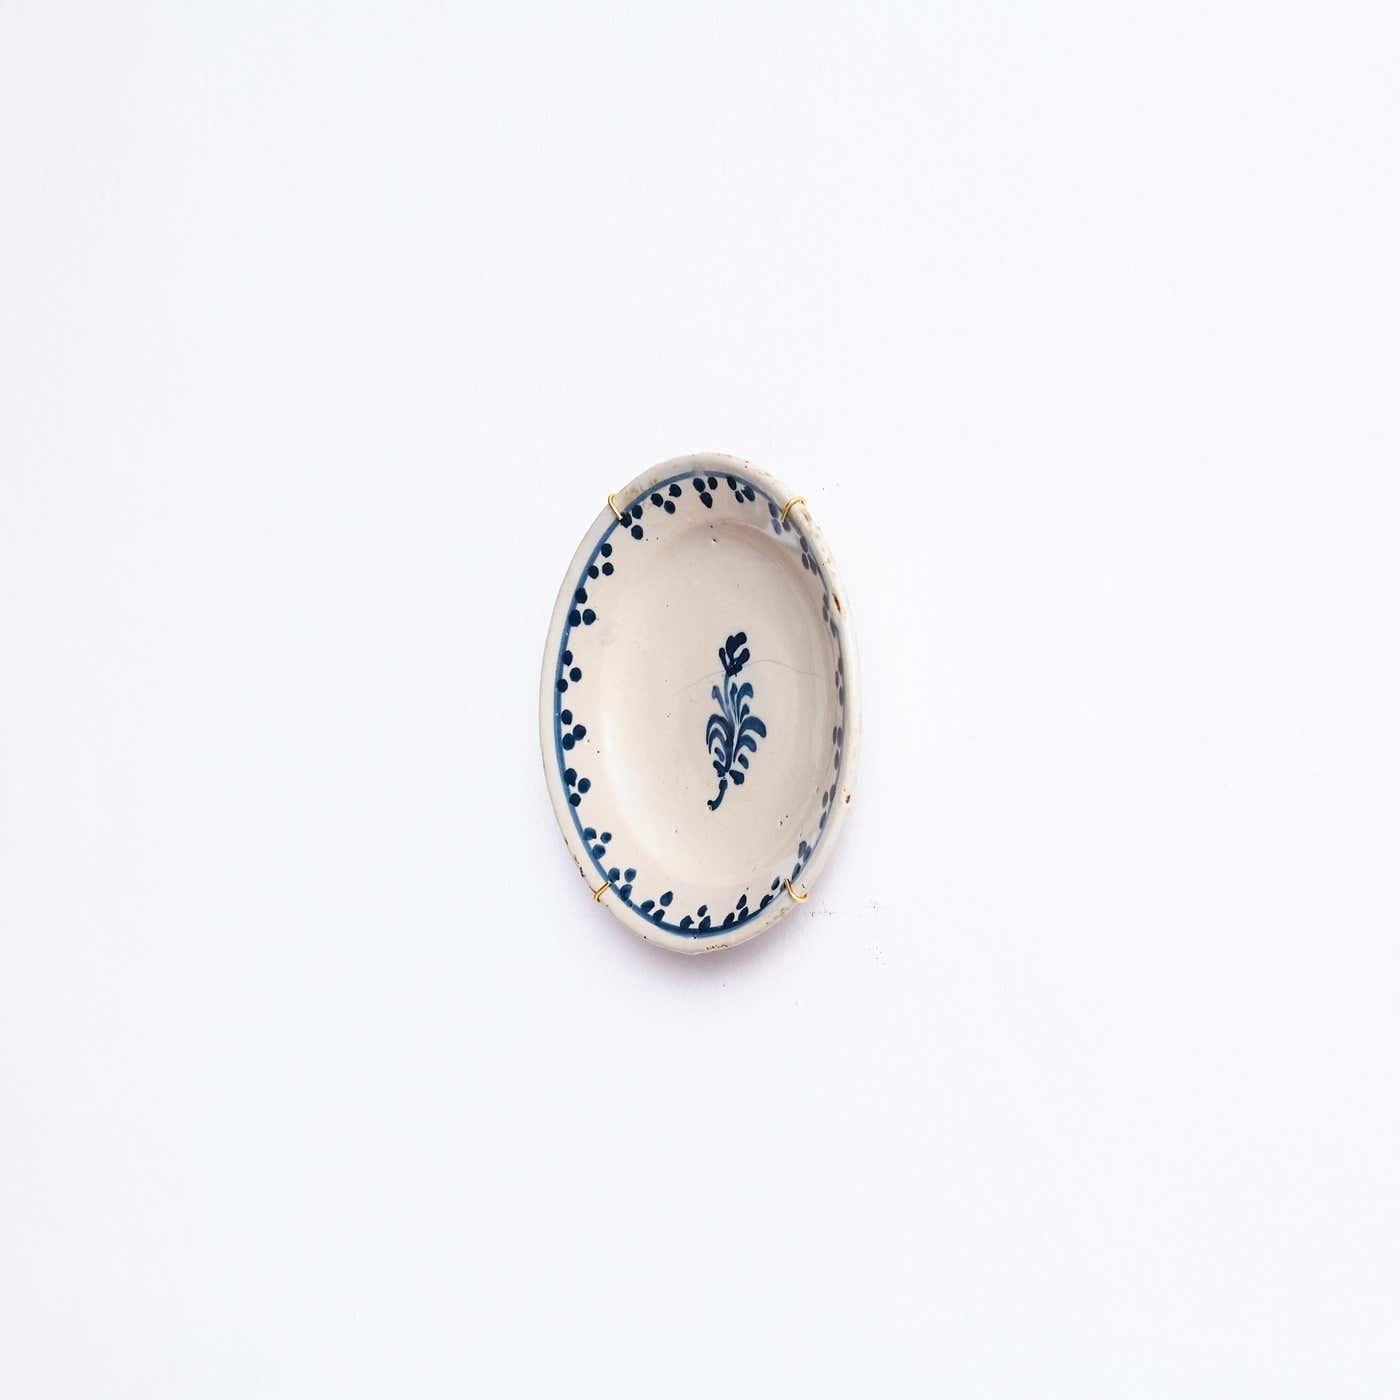 Keramischer handbemalter Teller eines unbekannten Künstlers.

Dieser atemberaubende Keramikteller, der sorgfältig von Hand in einem ruhigen Blauton auf einem makellosen weißen Hintergrund bemalt wurde, wertet Ihre Einrichtung auf. Jeder Pinselstrich